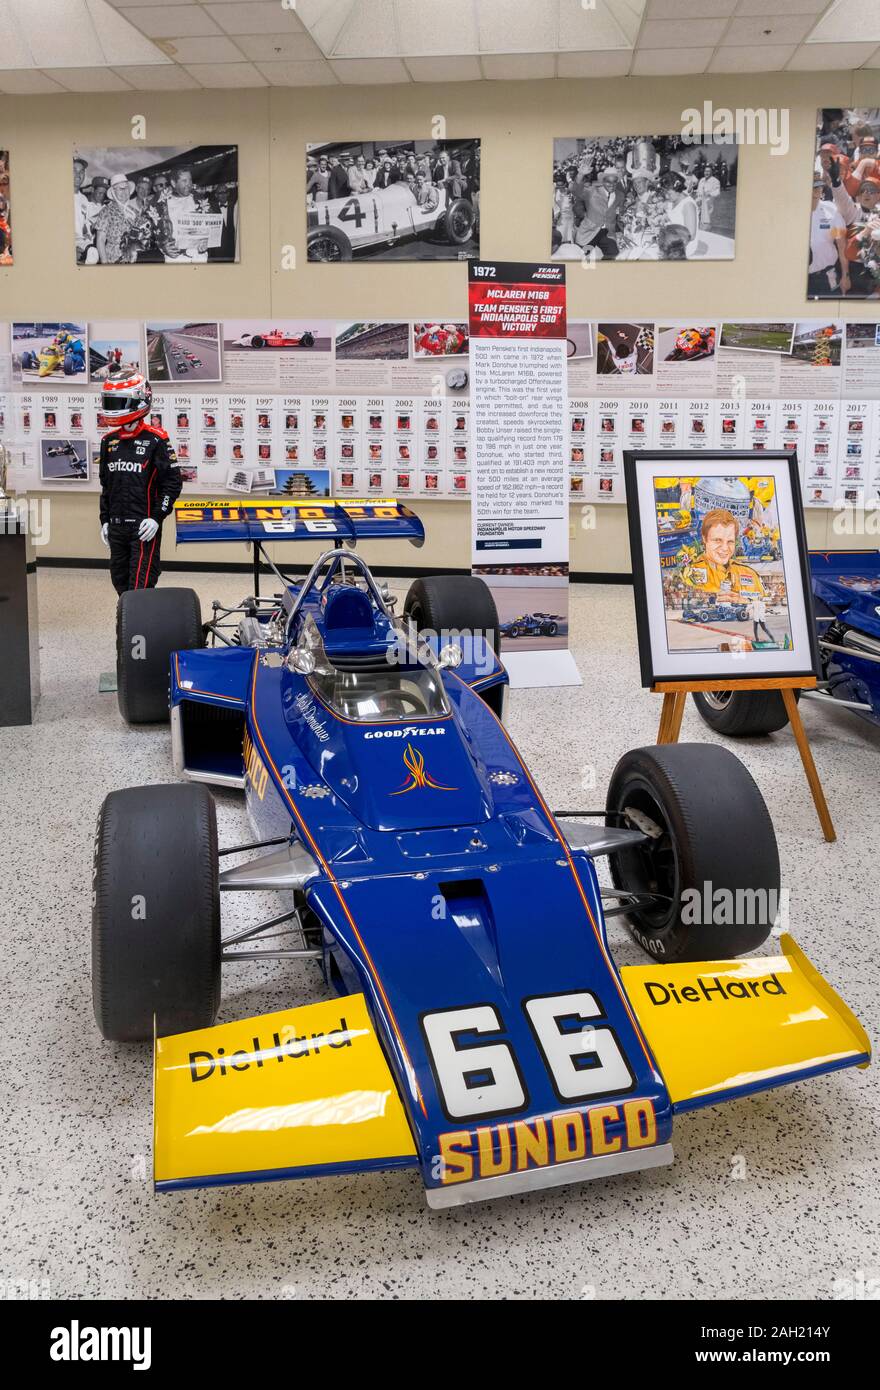 McLaren M16B. Équipe Penske a remporté l'Indy 5001972 dans cette voiture avec chauffeur Mark Donohue, Indianapolis Motor Speedway Museum, Indianapolis, Indiana, USA Banque D'Images